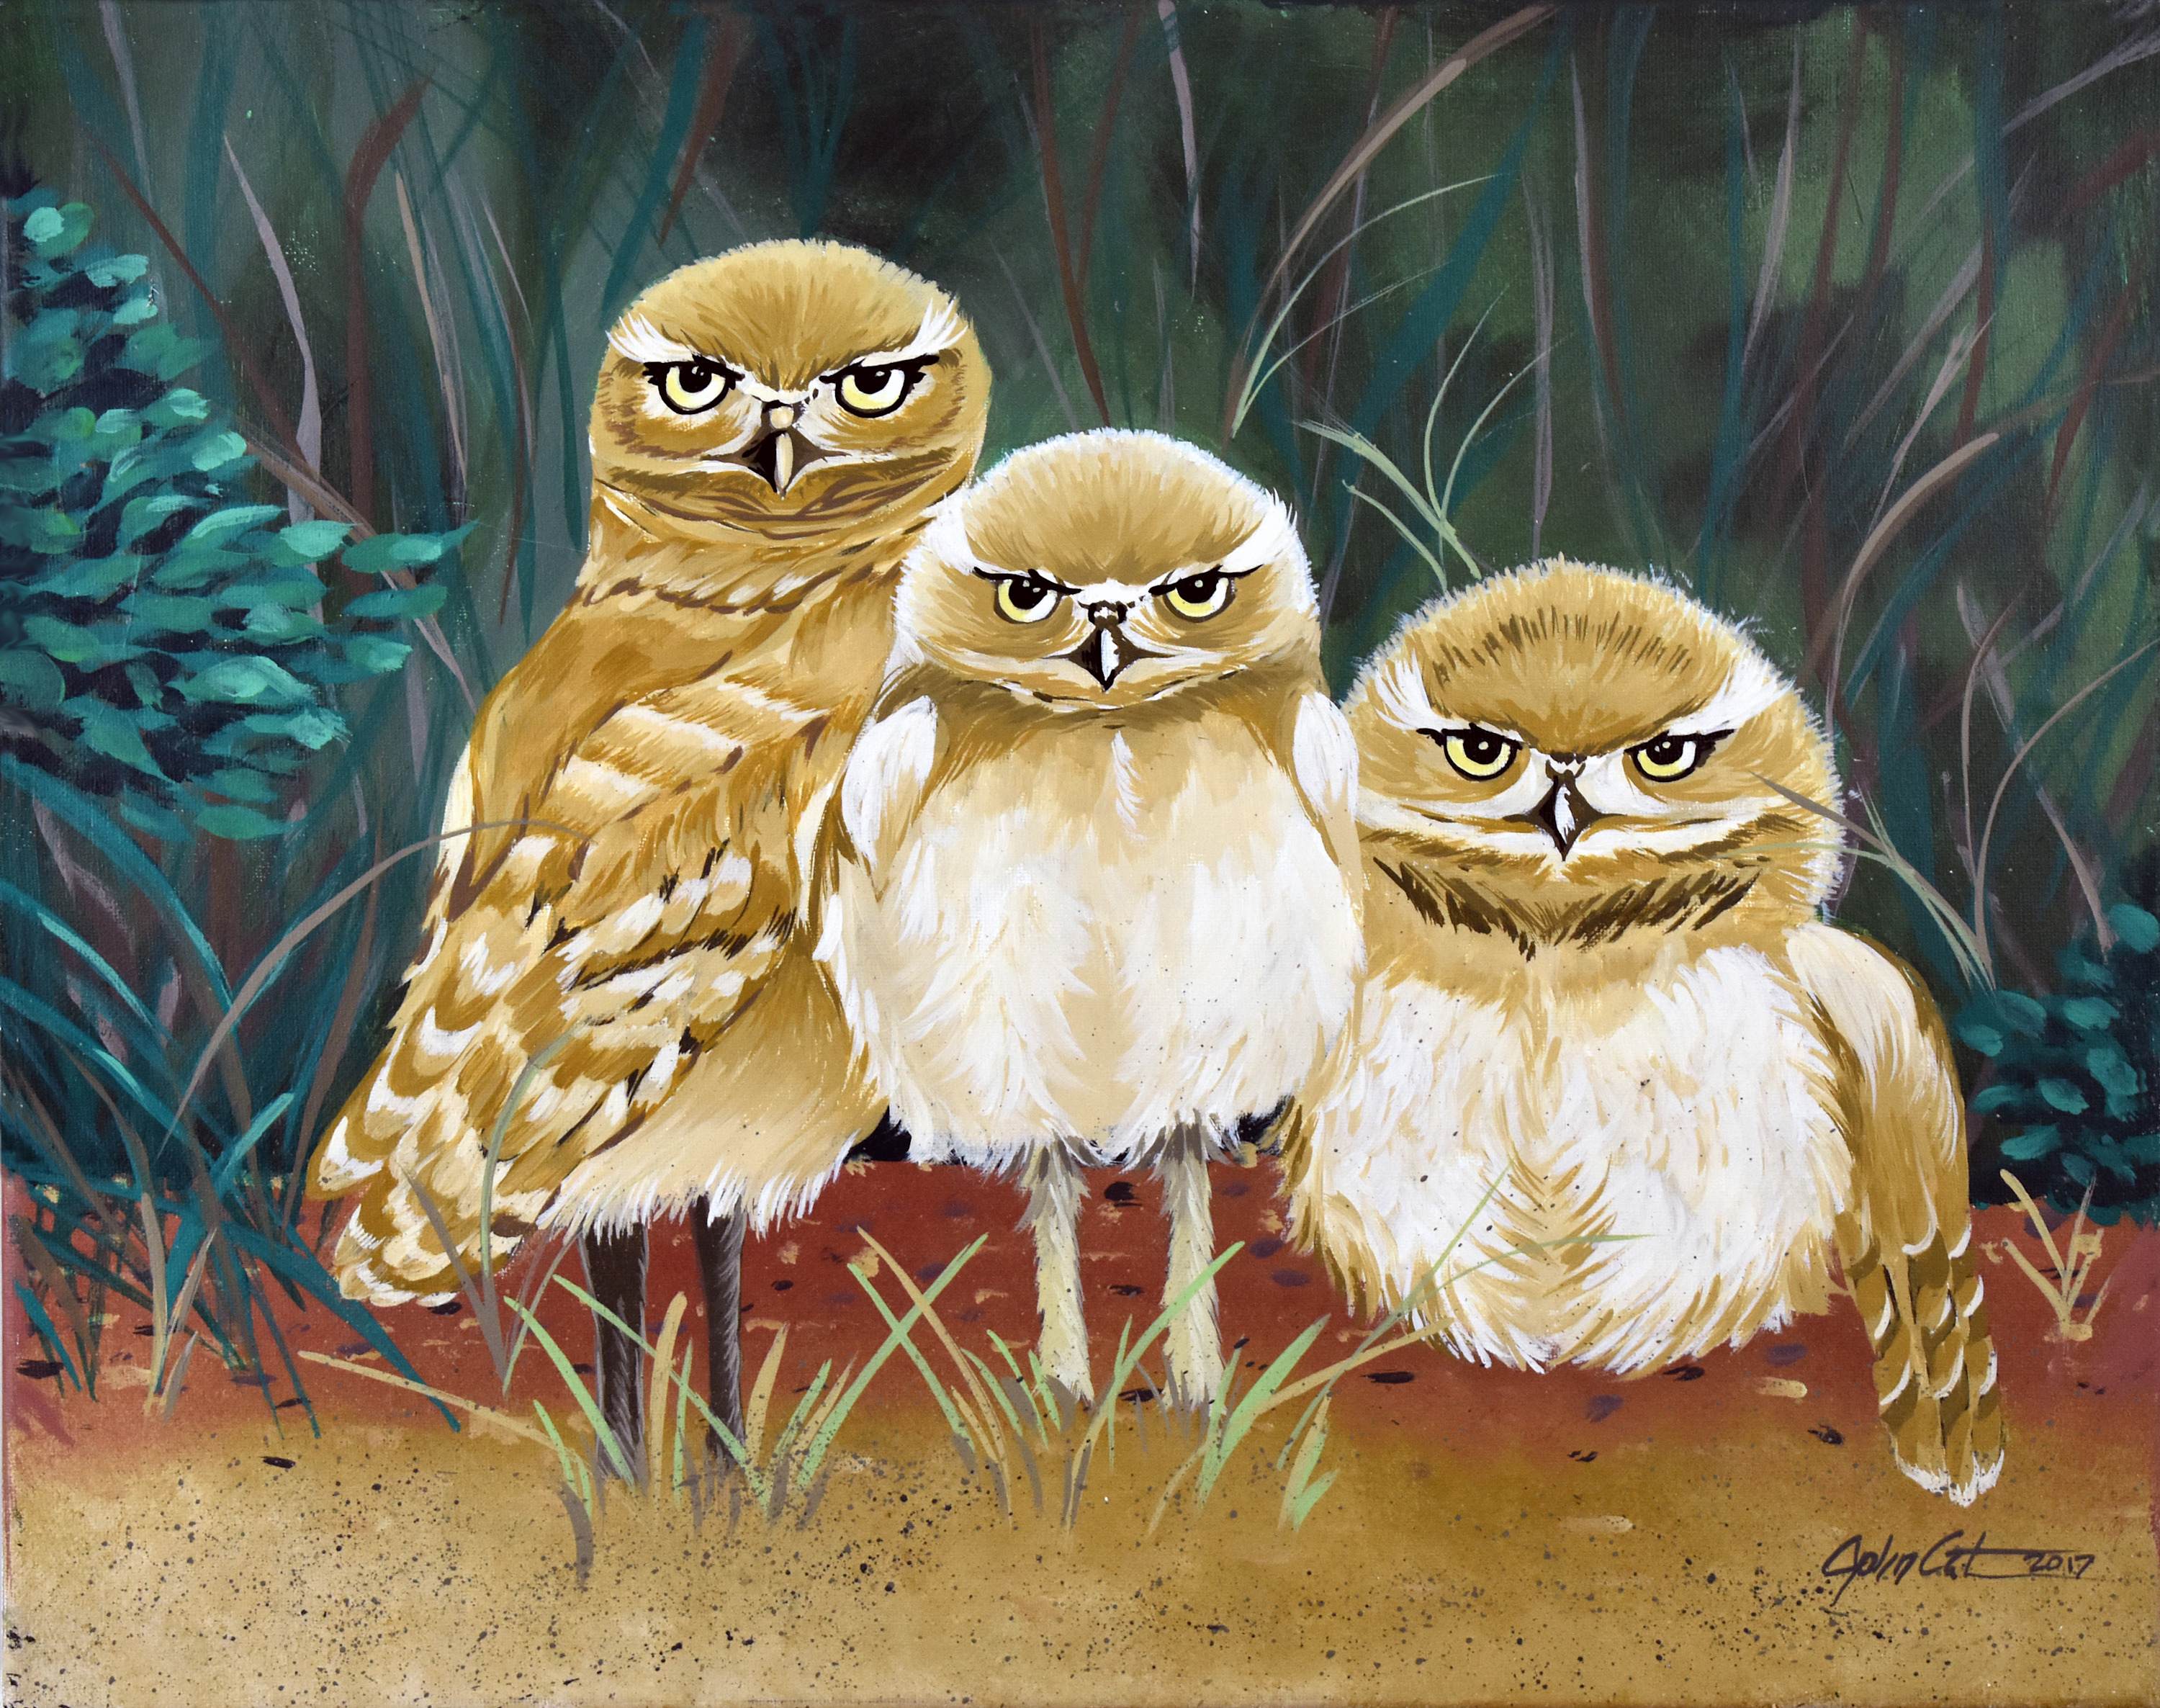 Owls nest yio8lt